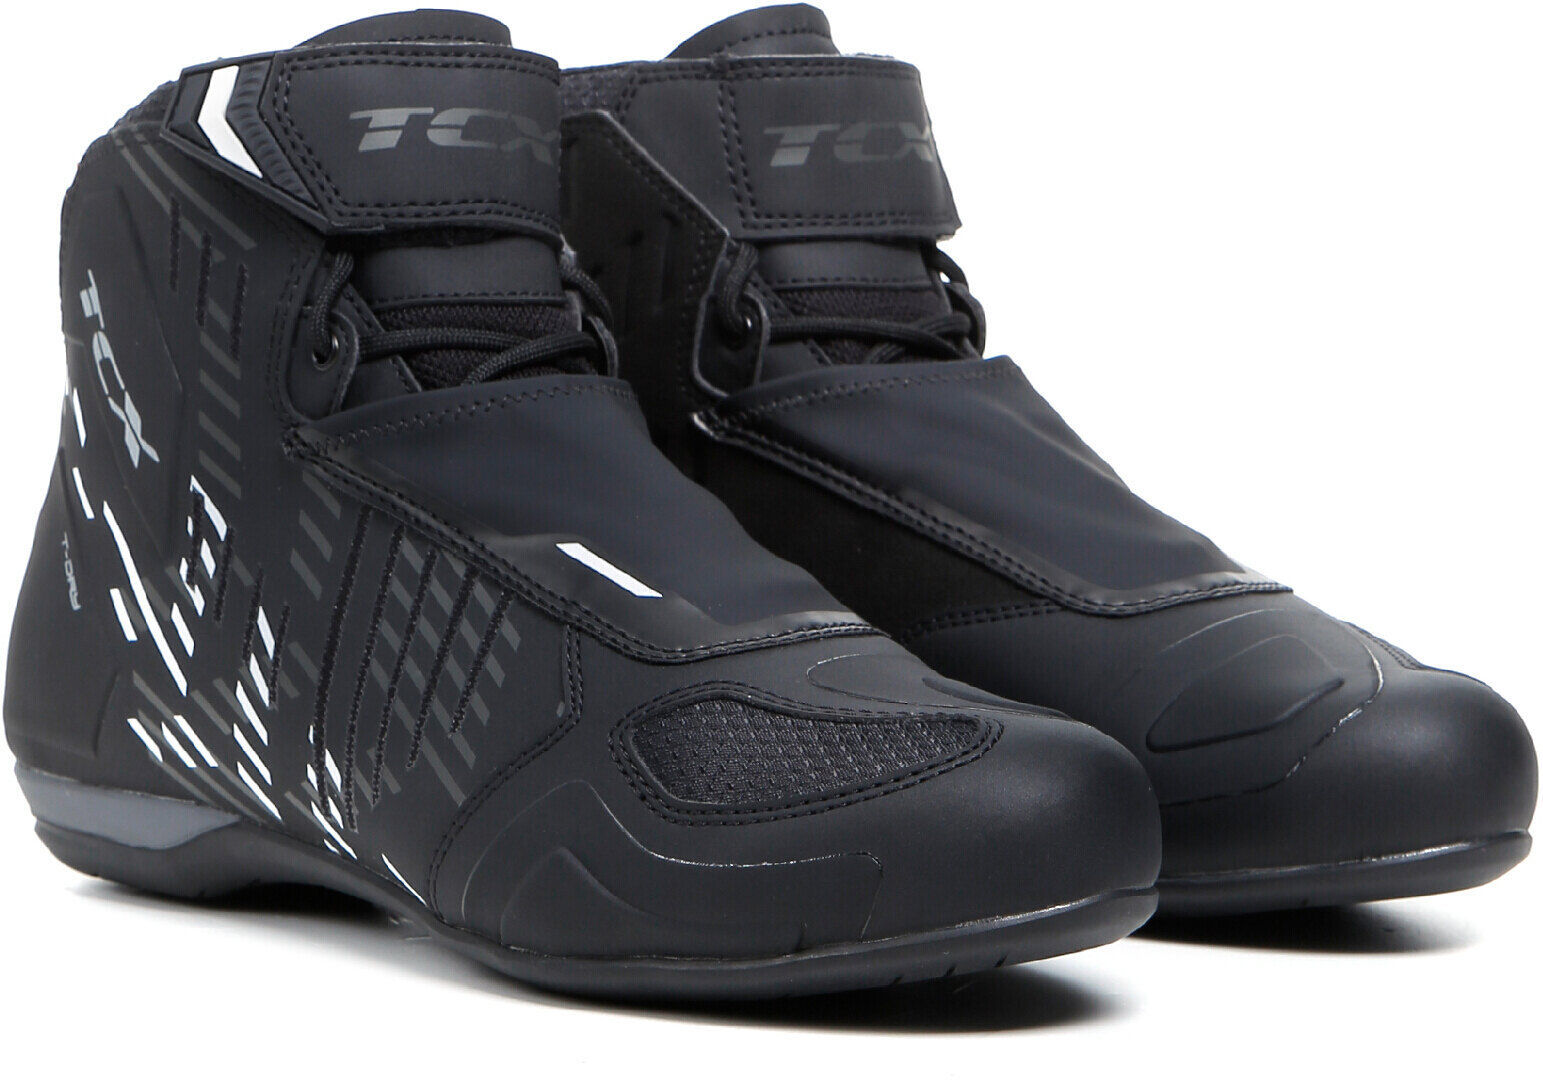 TCX RO4D WP Zapatos de motocicleta - Negro Blanco (45)